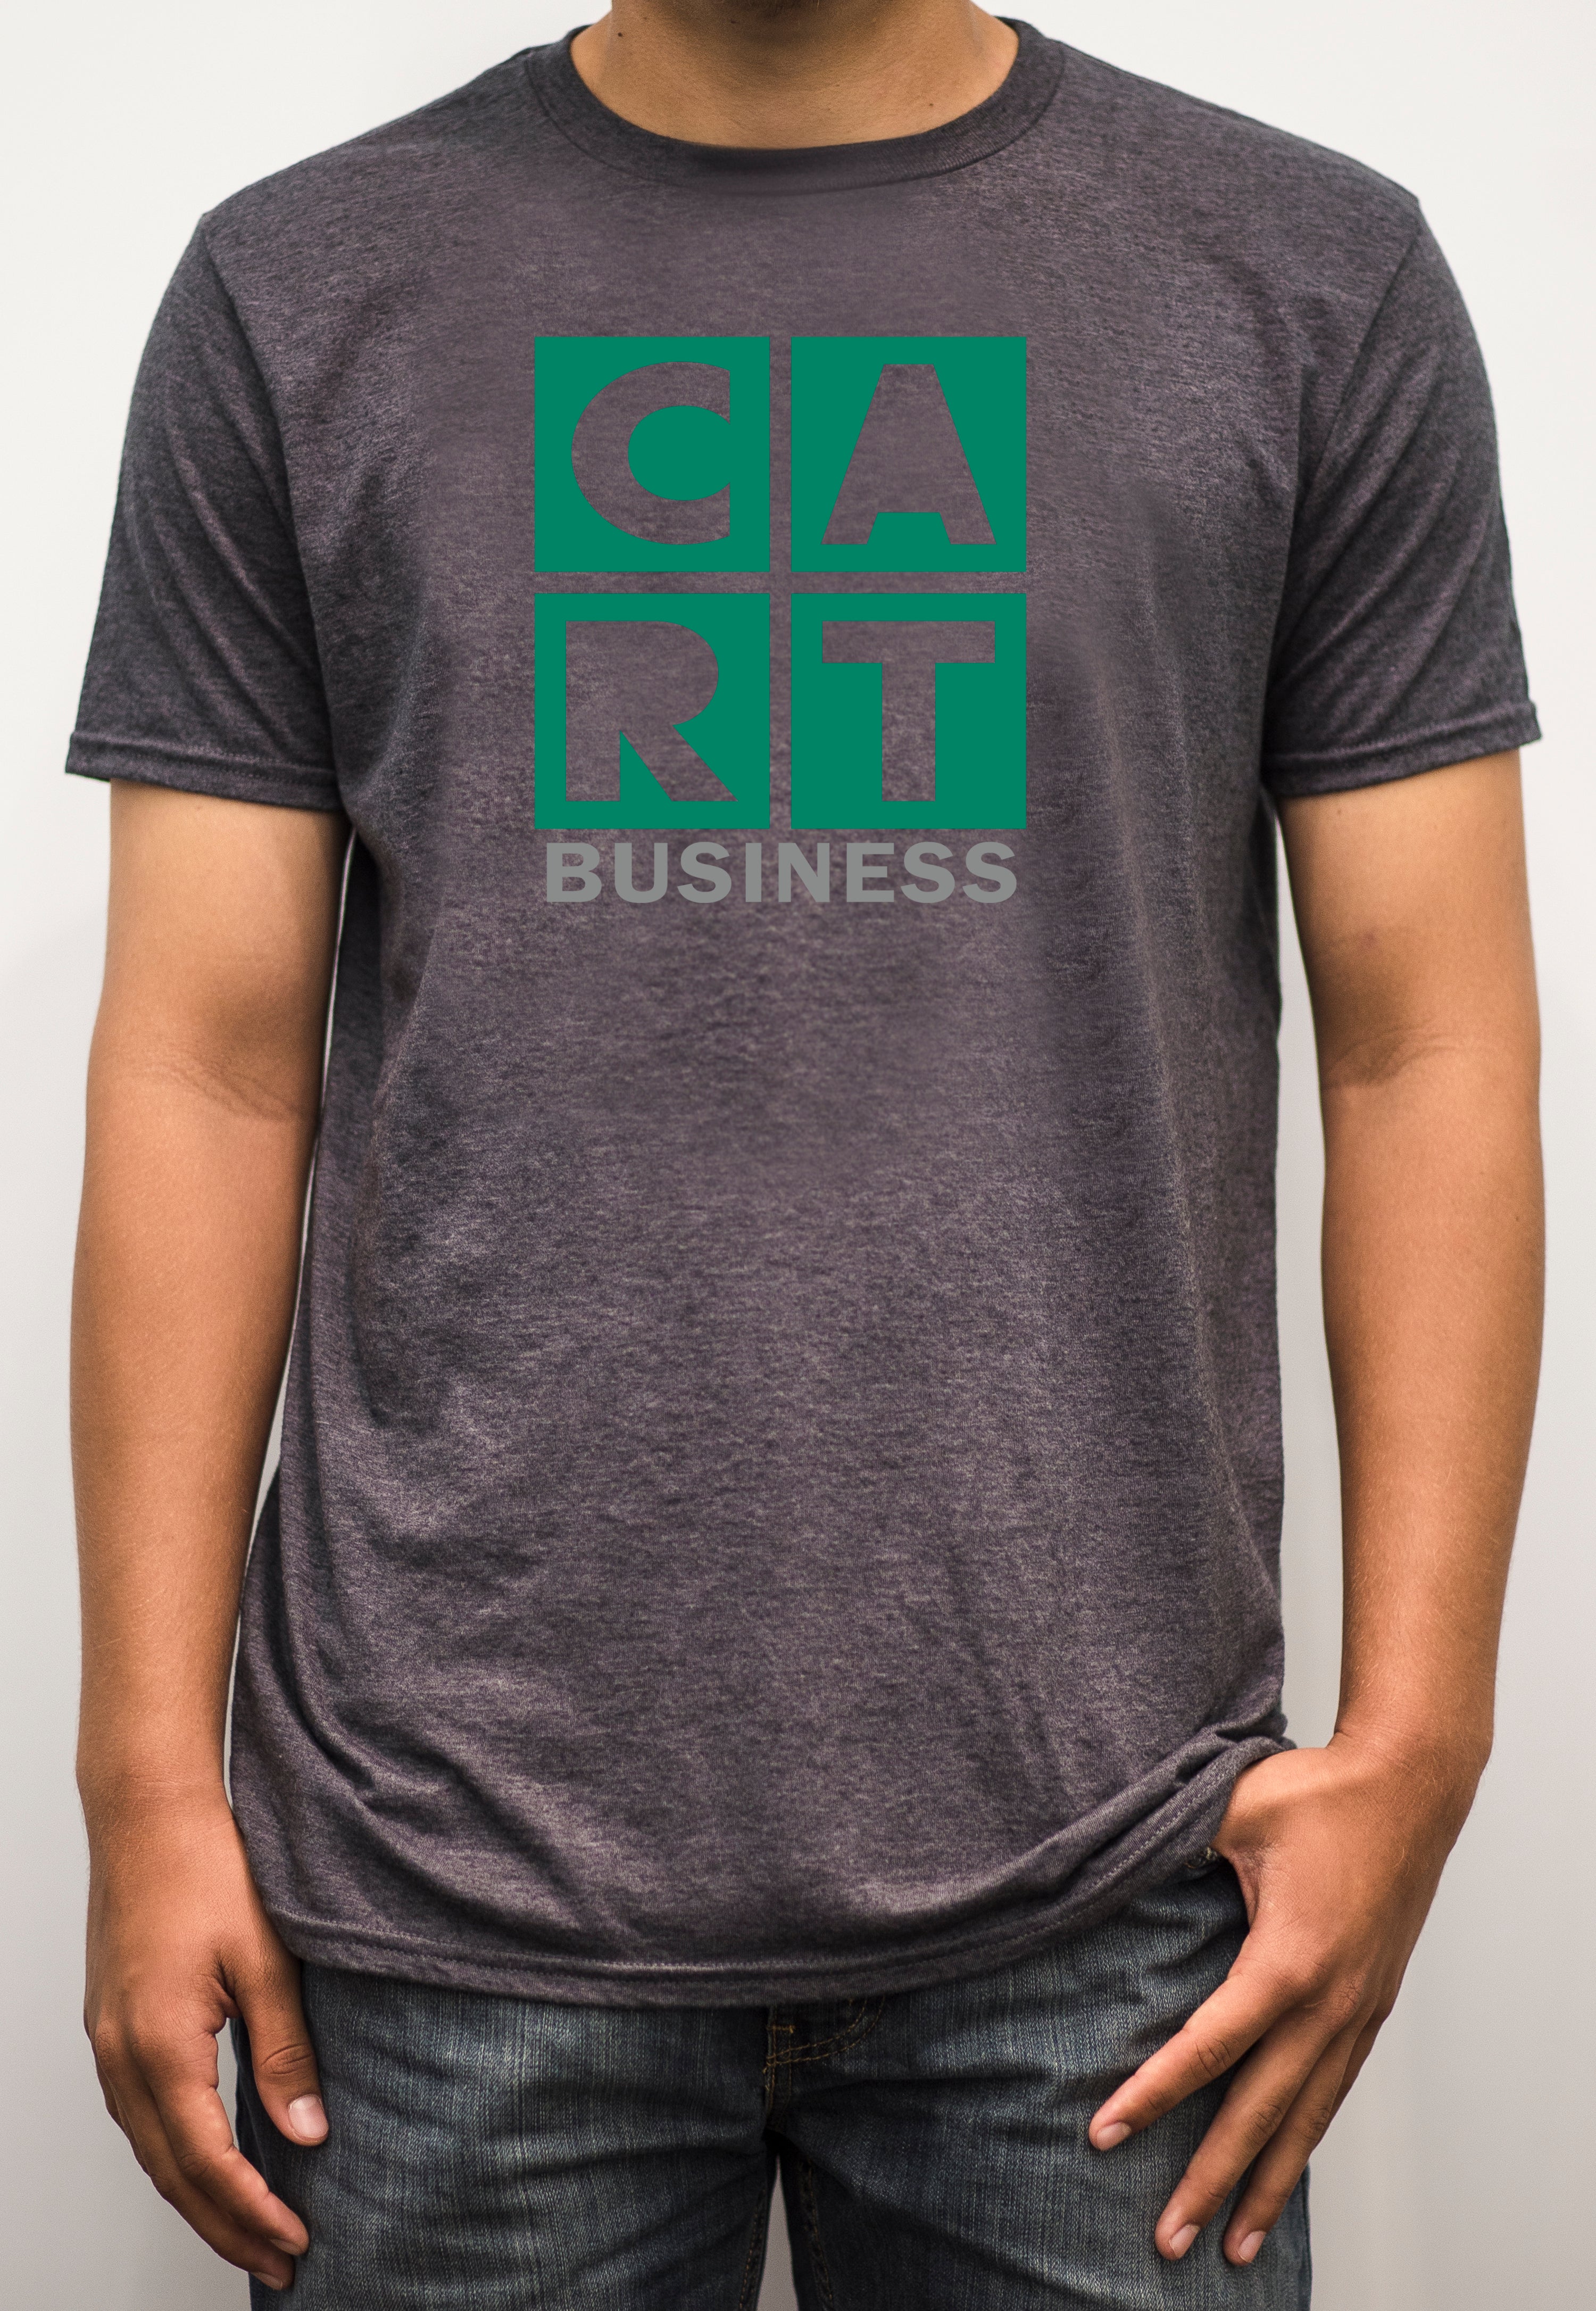 Short sleeve t-shirt - business grey/green